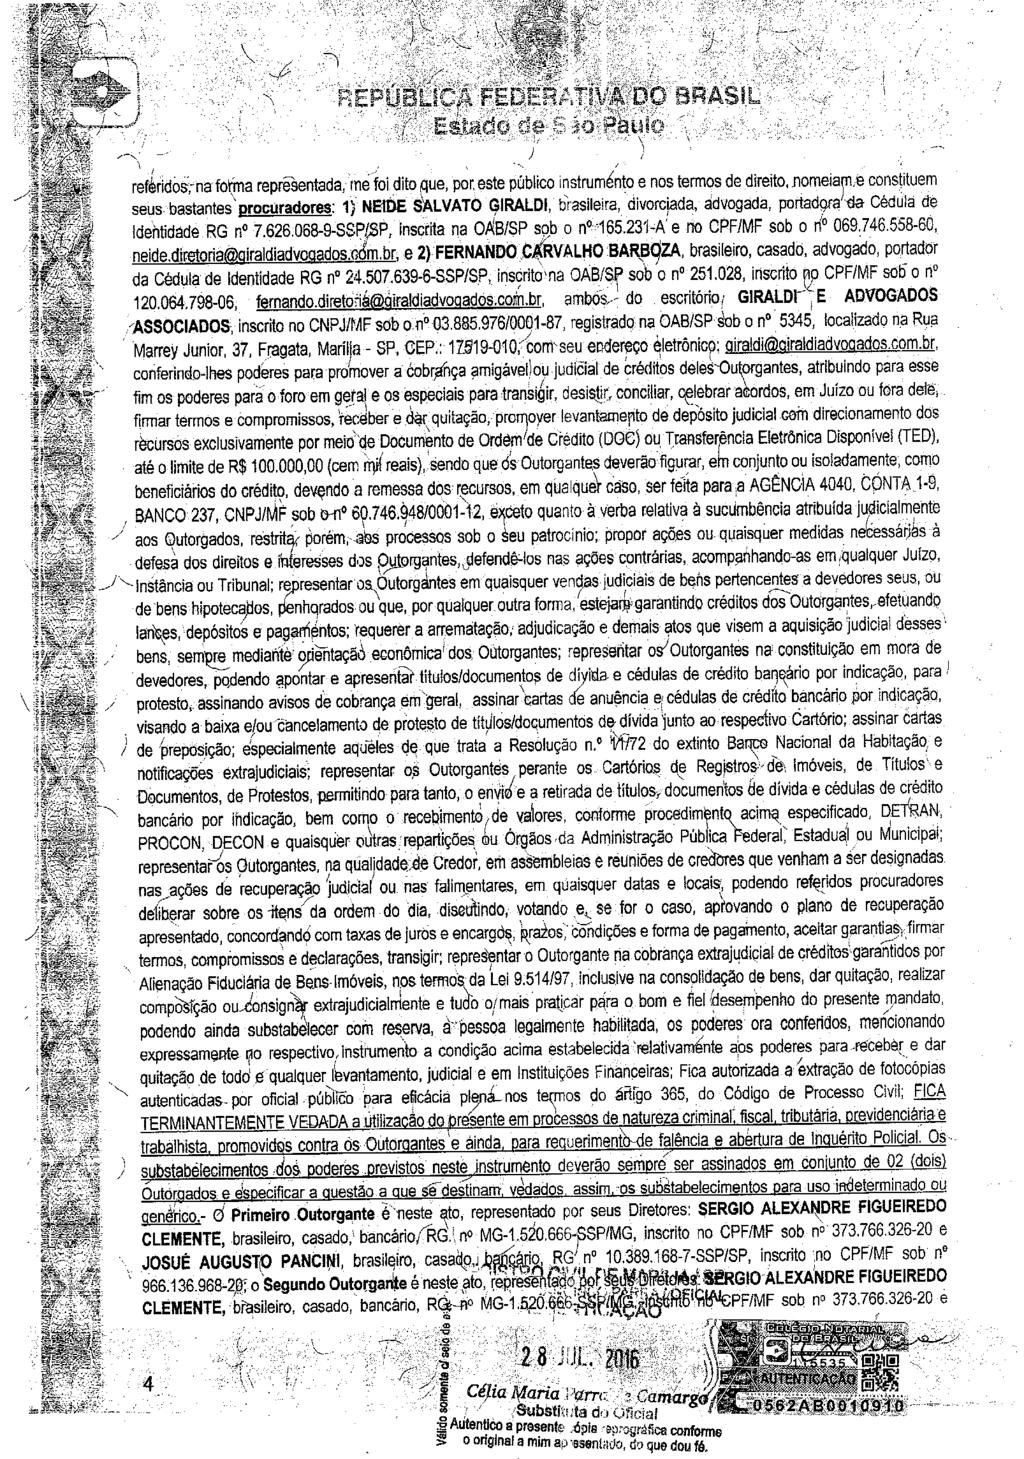 fls. 6 Este documento é cópia do original, assinado digitalmente por NEIDE SALVATO GIRALDI e Tribunal de Justica do Estado de Sao Paulo, protocolado em 07/12/2016 às 15:05, sob o número